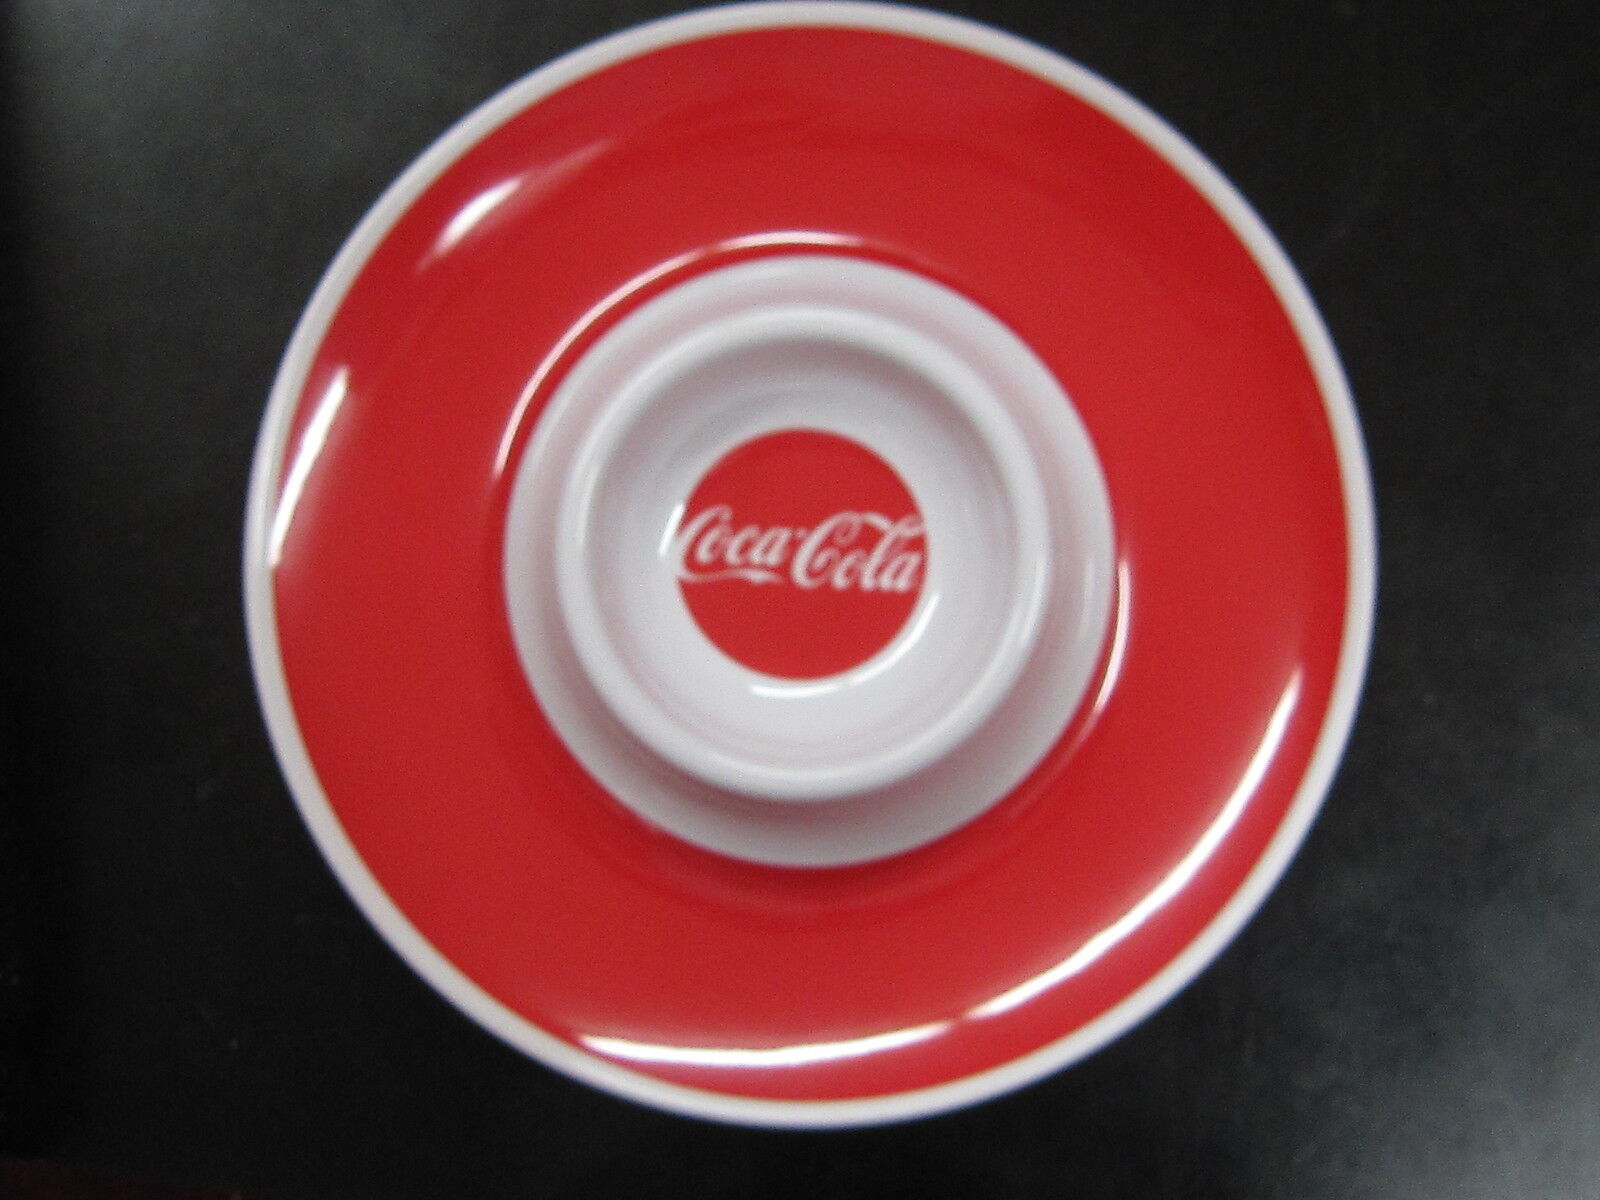 Coca-Cola Chip & Dip Serving Dish - NEW